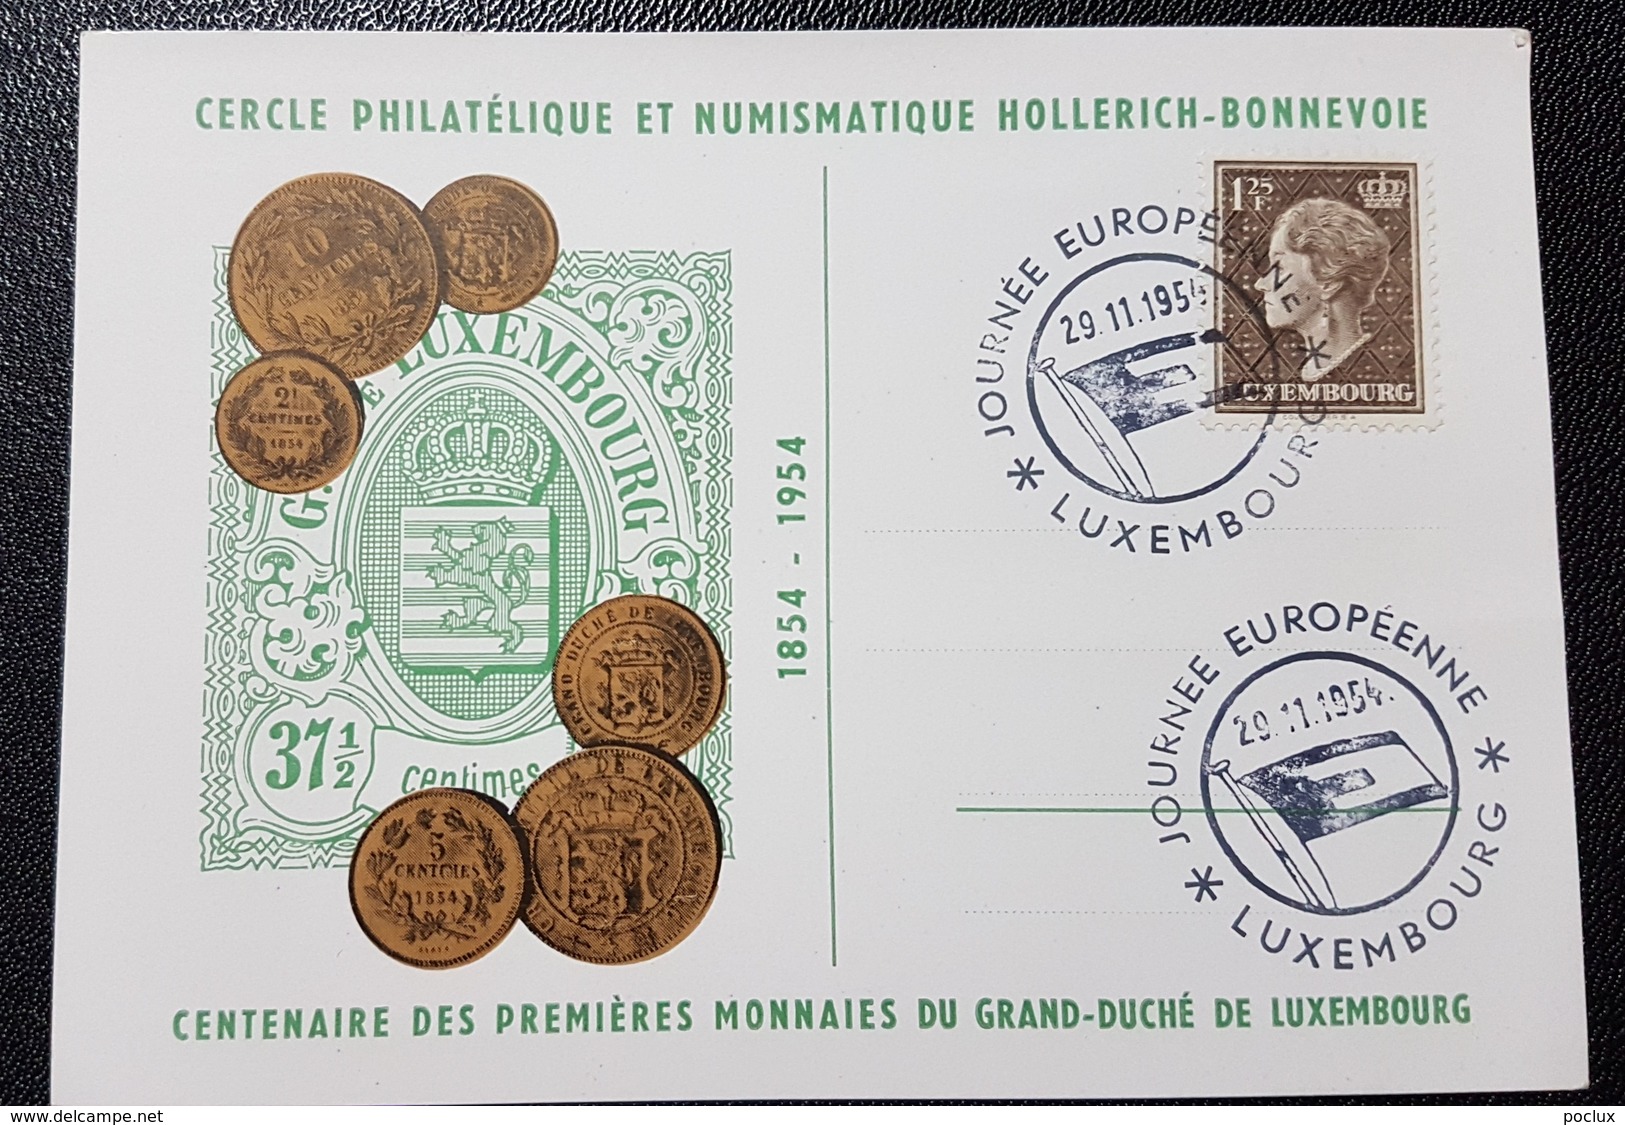 Luxembourg 1954- Journée Européenne Du Timbre 1954- Centenaire De Nos Premières Monnaies Nationales - In Gedenken An